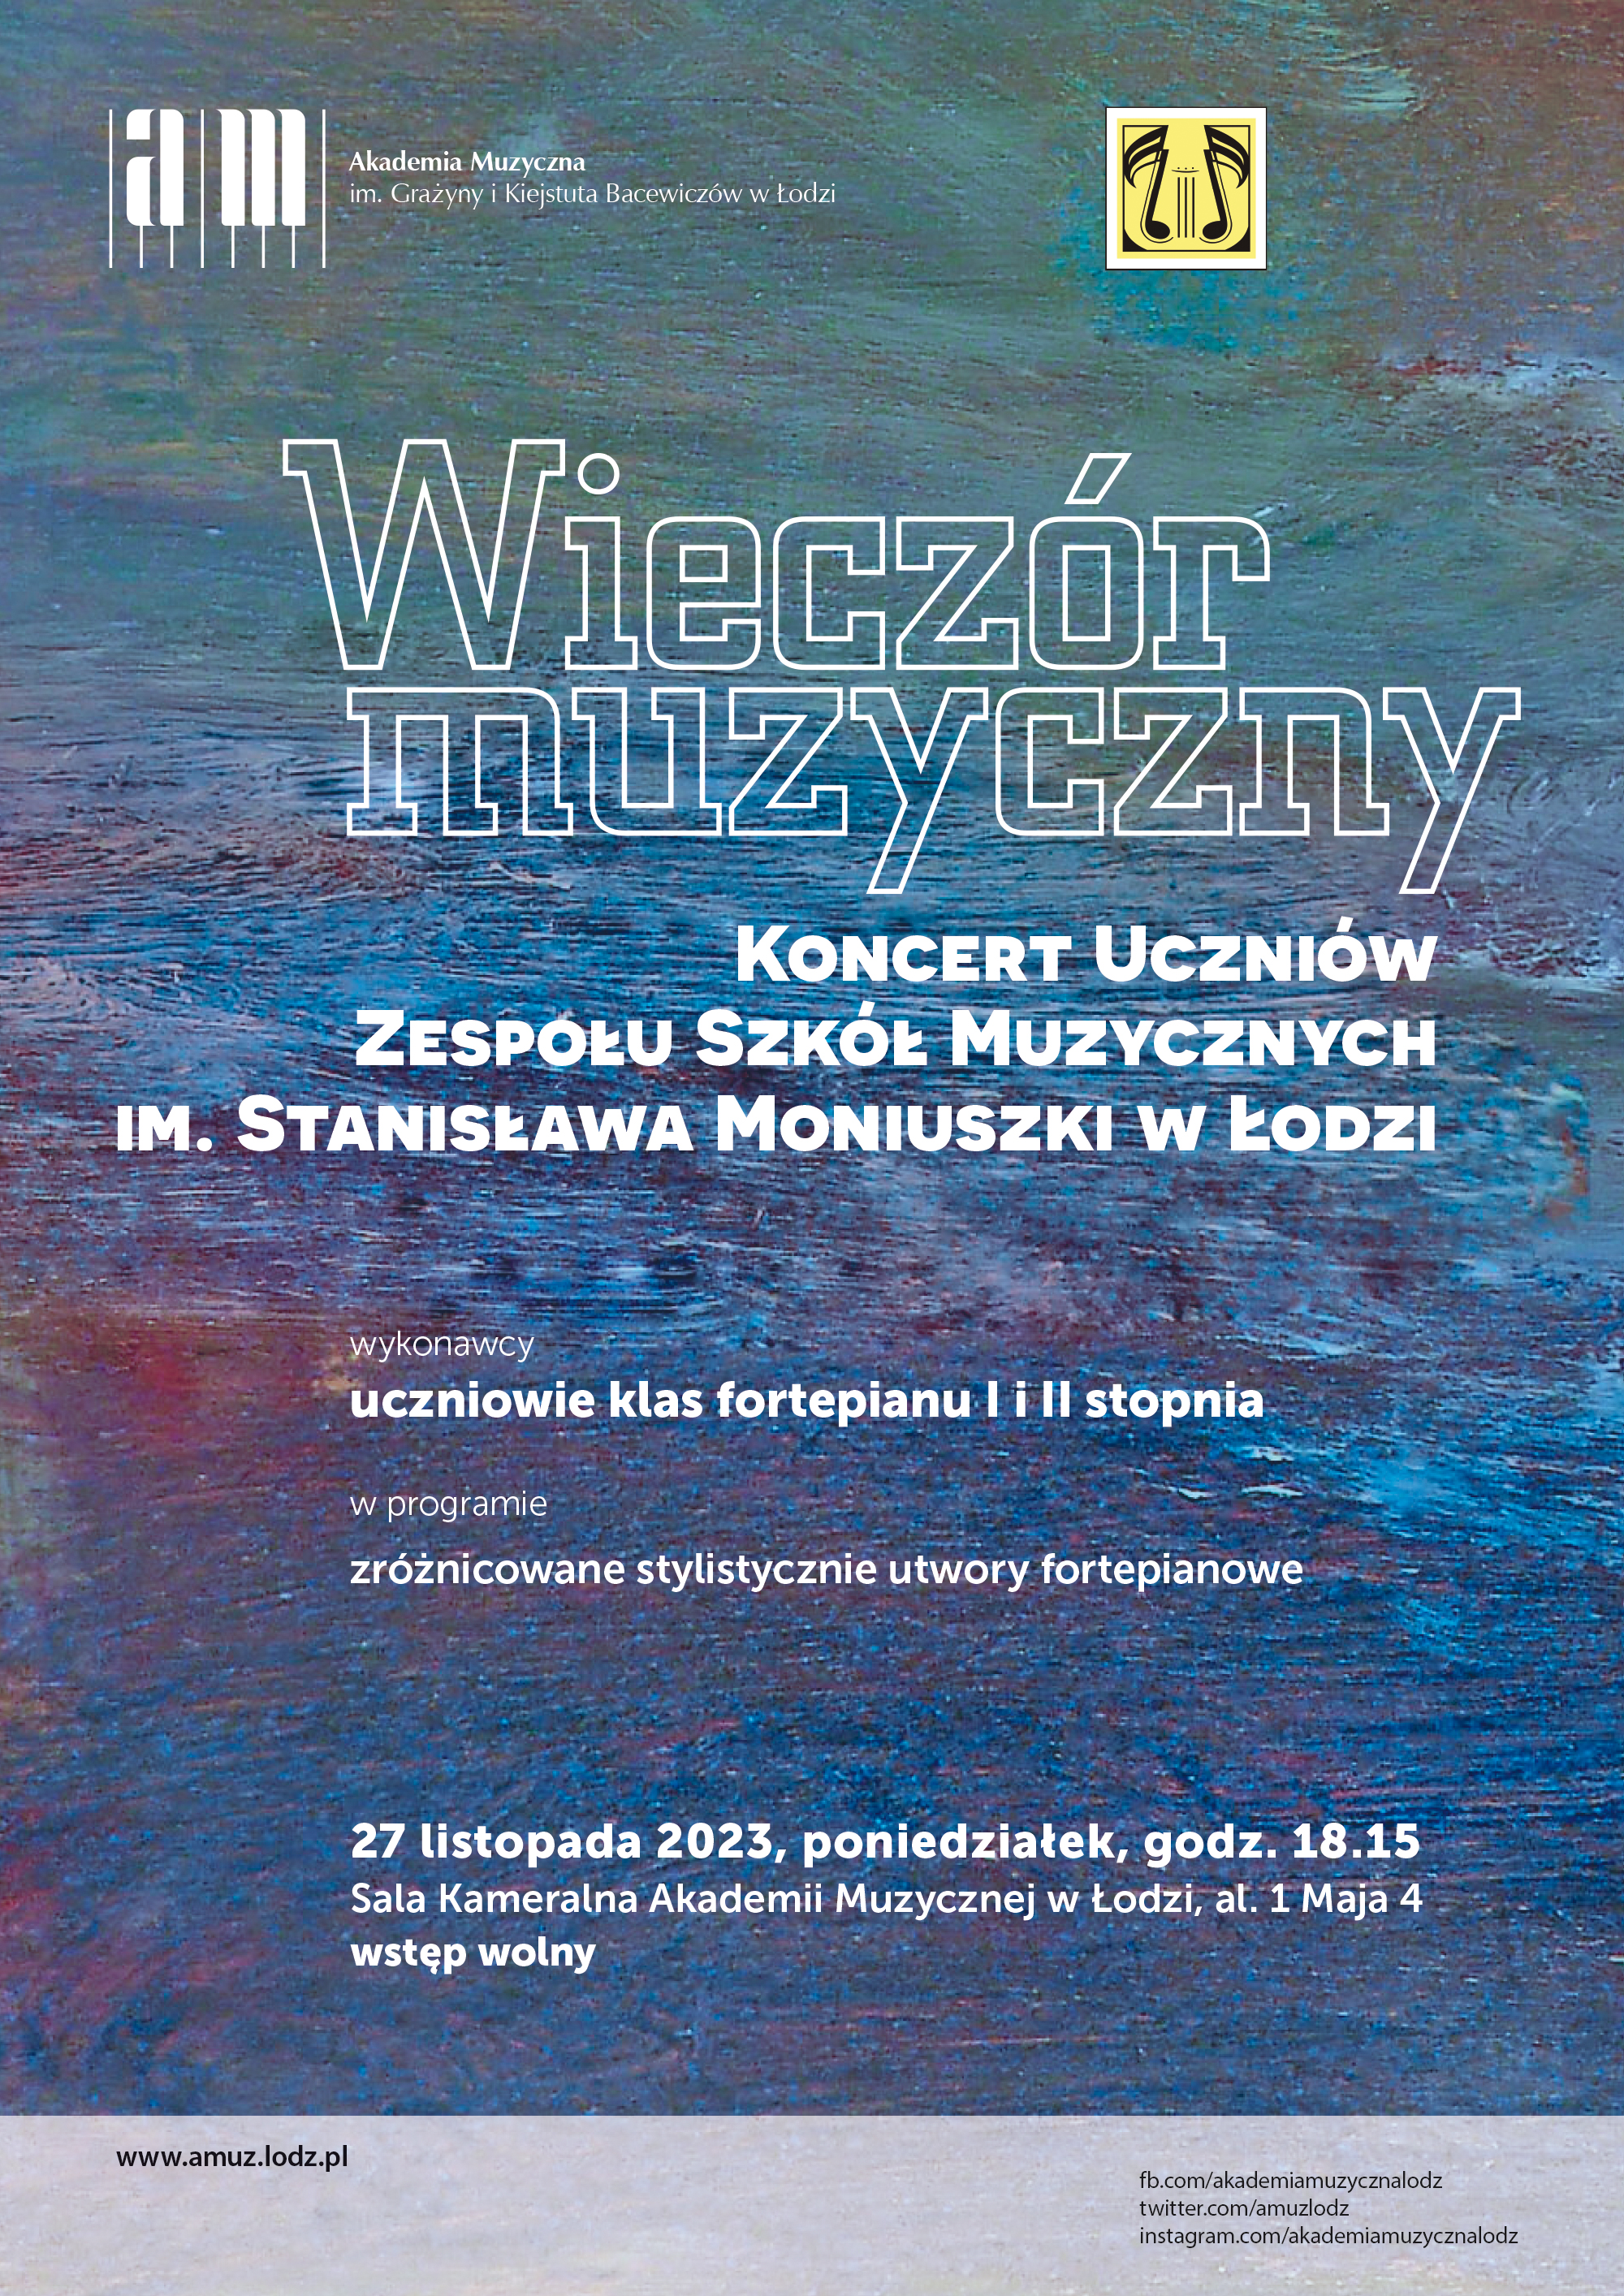 Koncert Uczniów Zespołu Szkół Muzycznych im. Stanisława Moniuszki w Łodzi